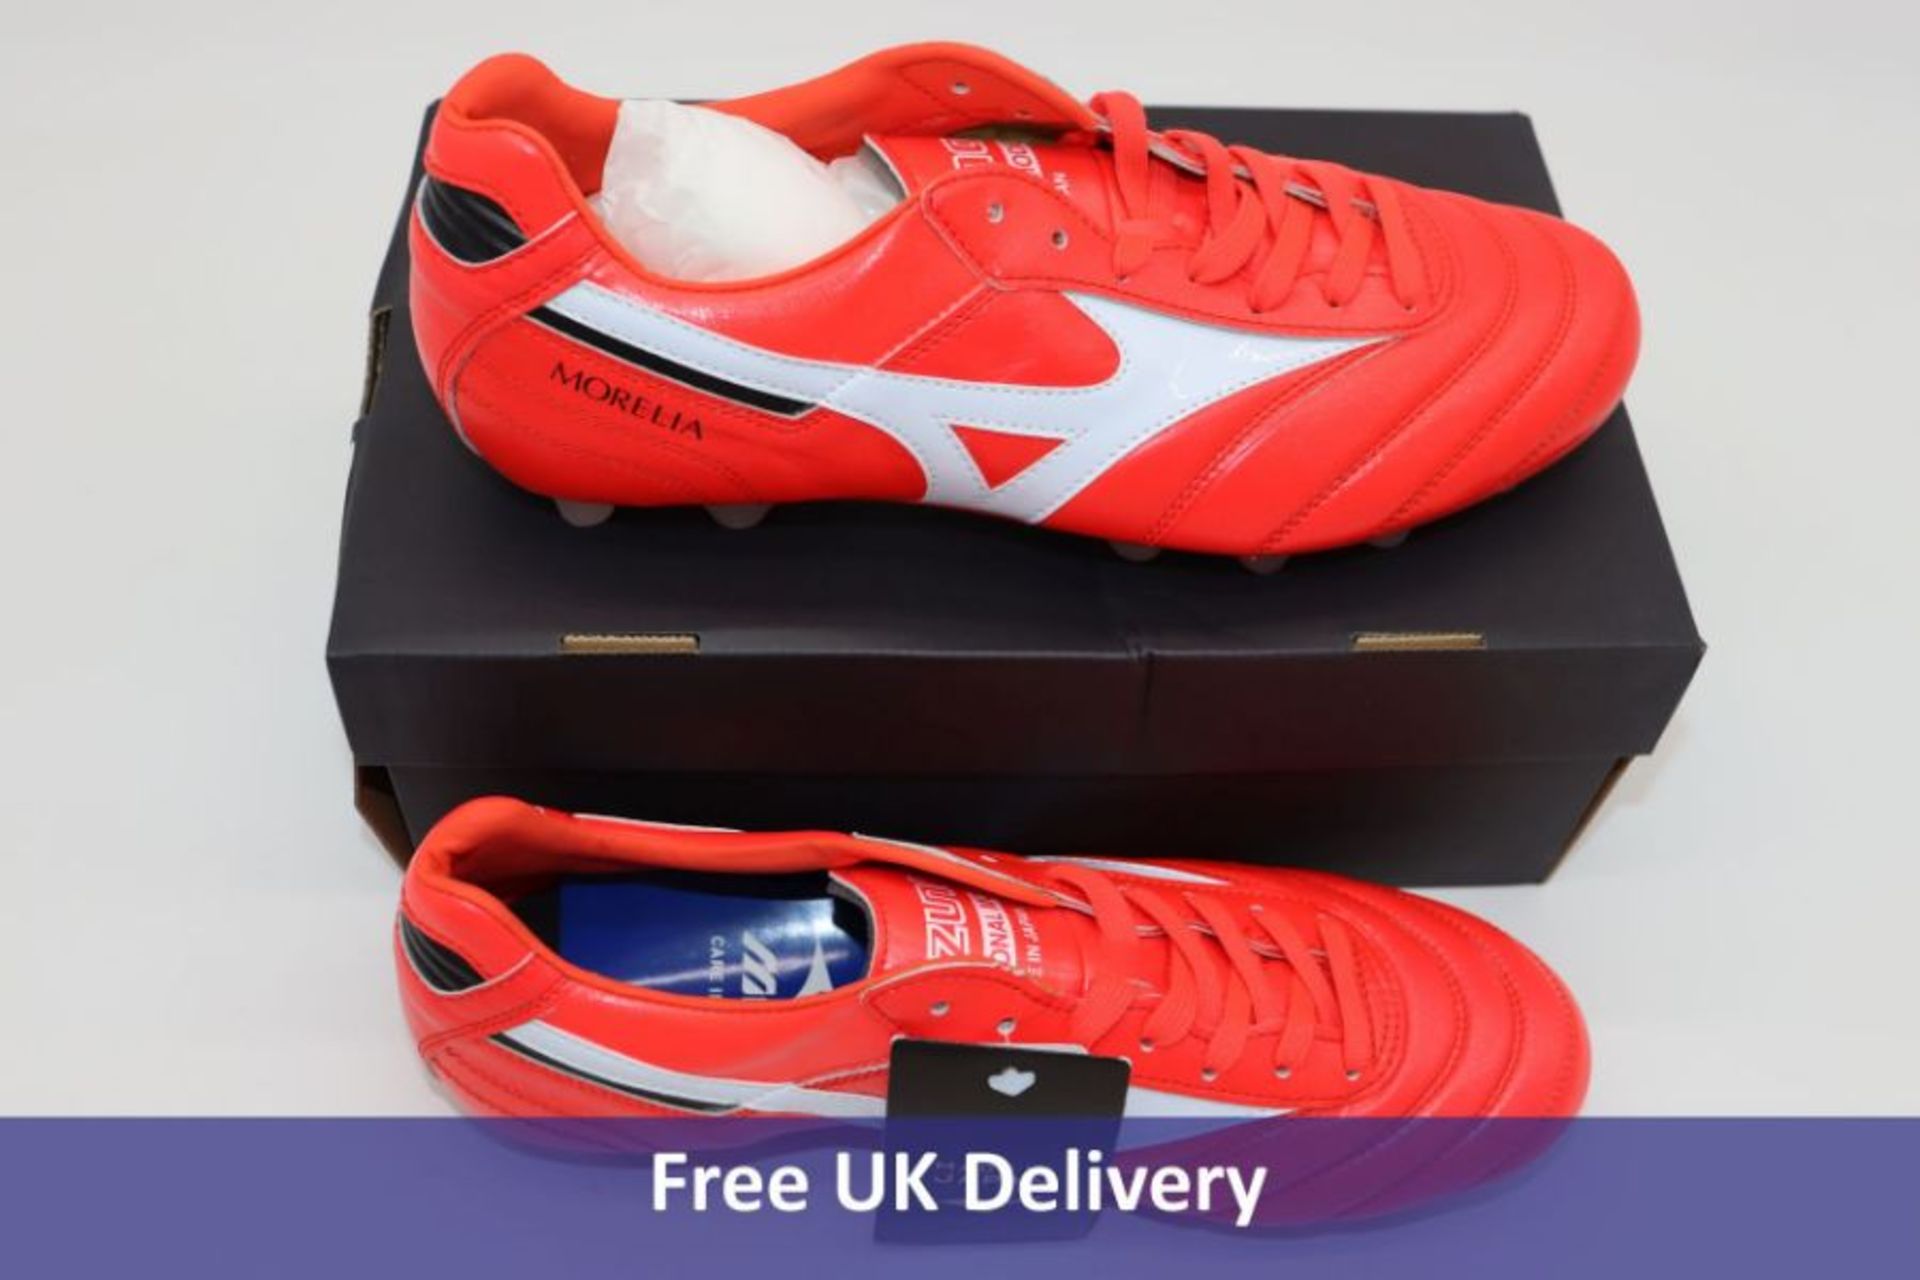 Mizuno Morelia II Football Boots, Orange, UK 8